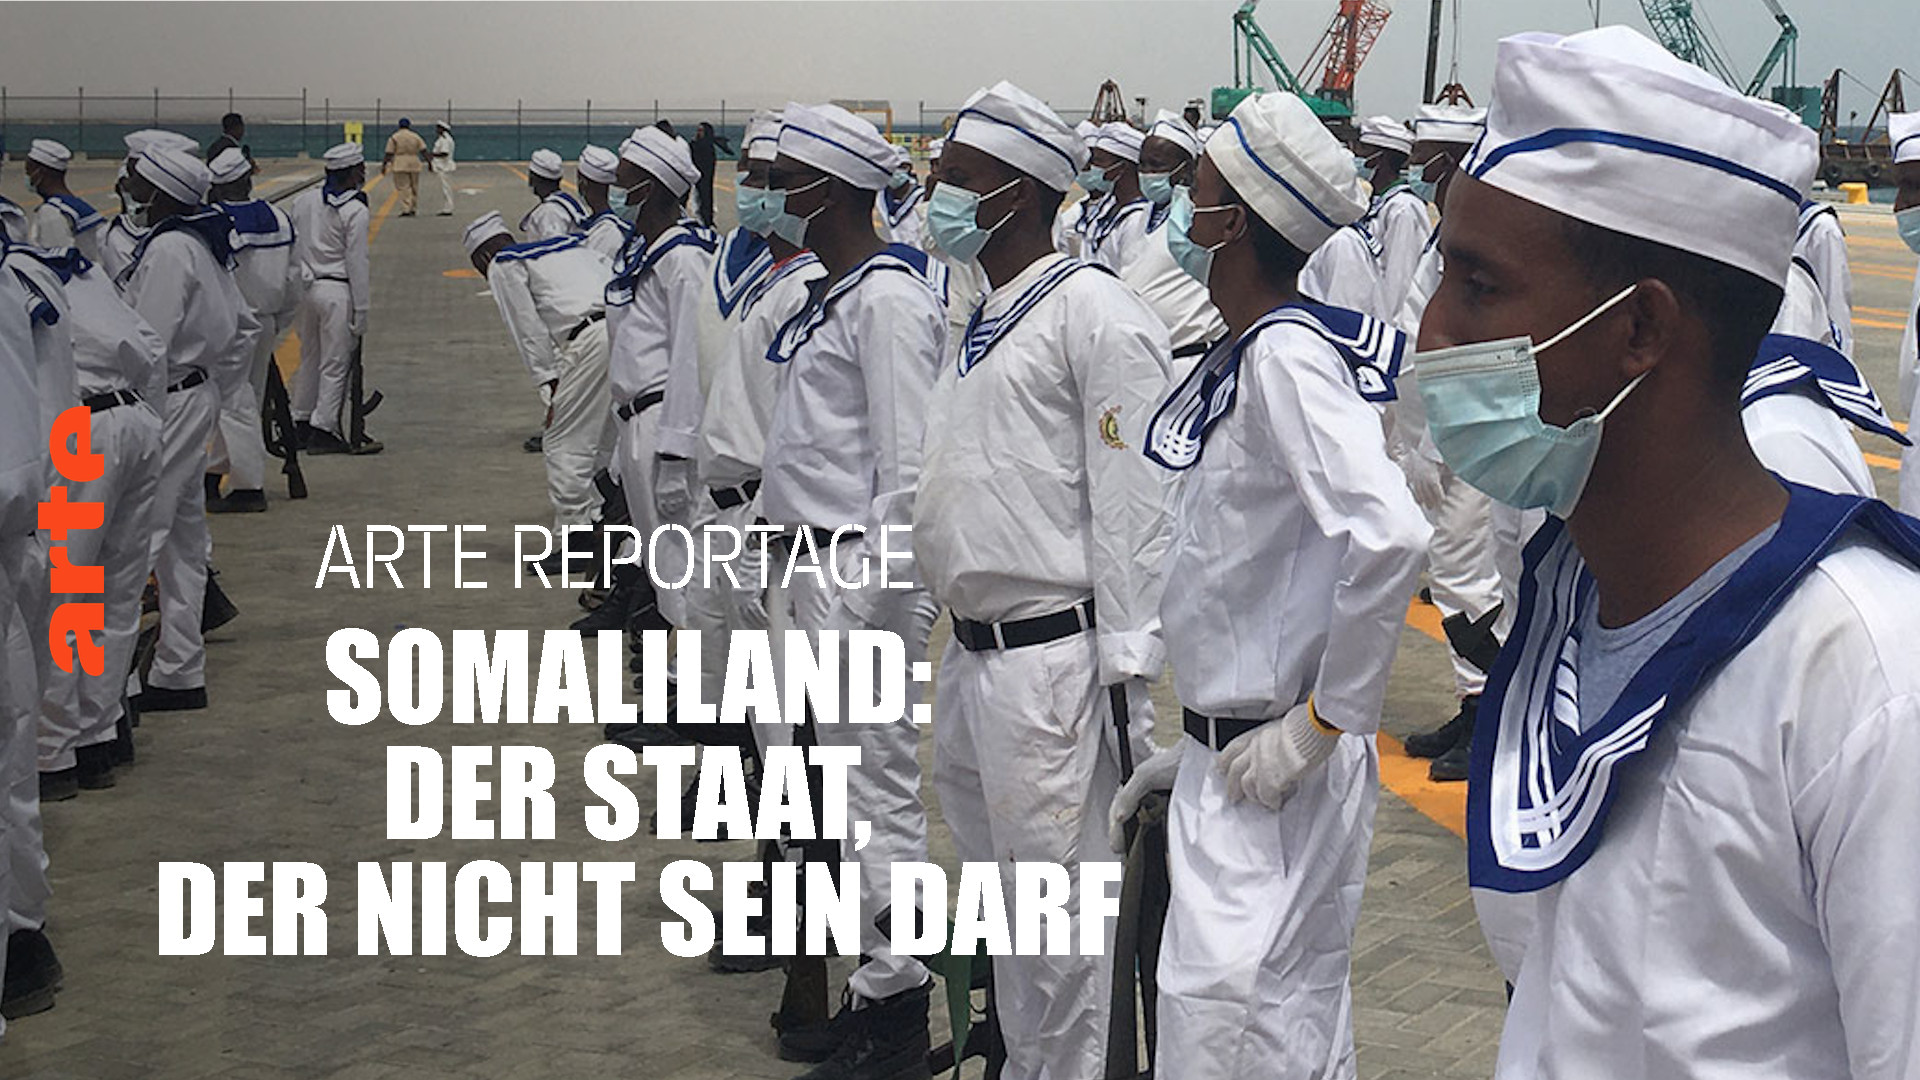 Somaliland: Der Staat, der nicht sein darf